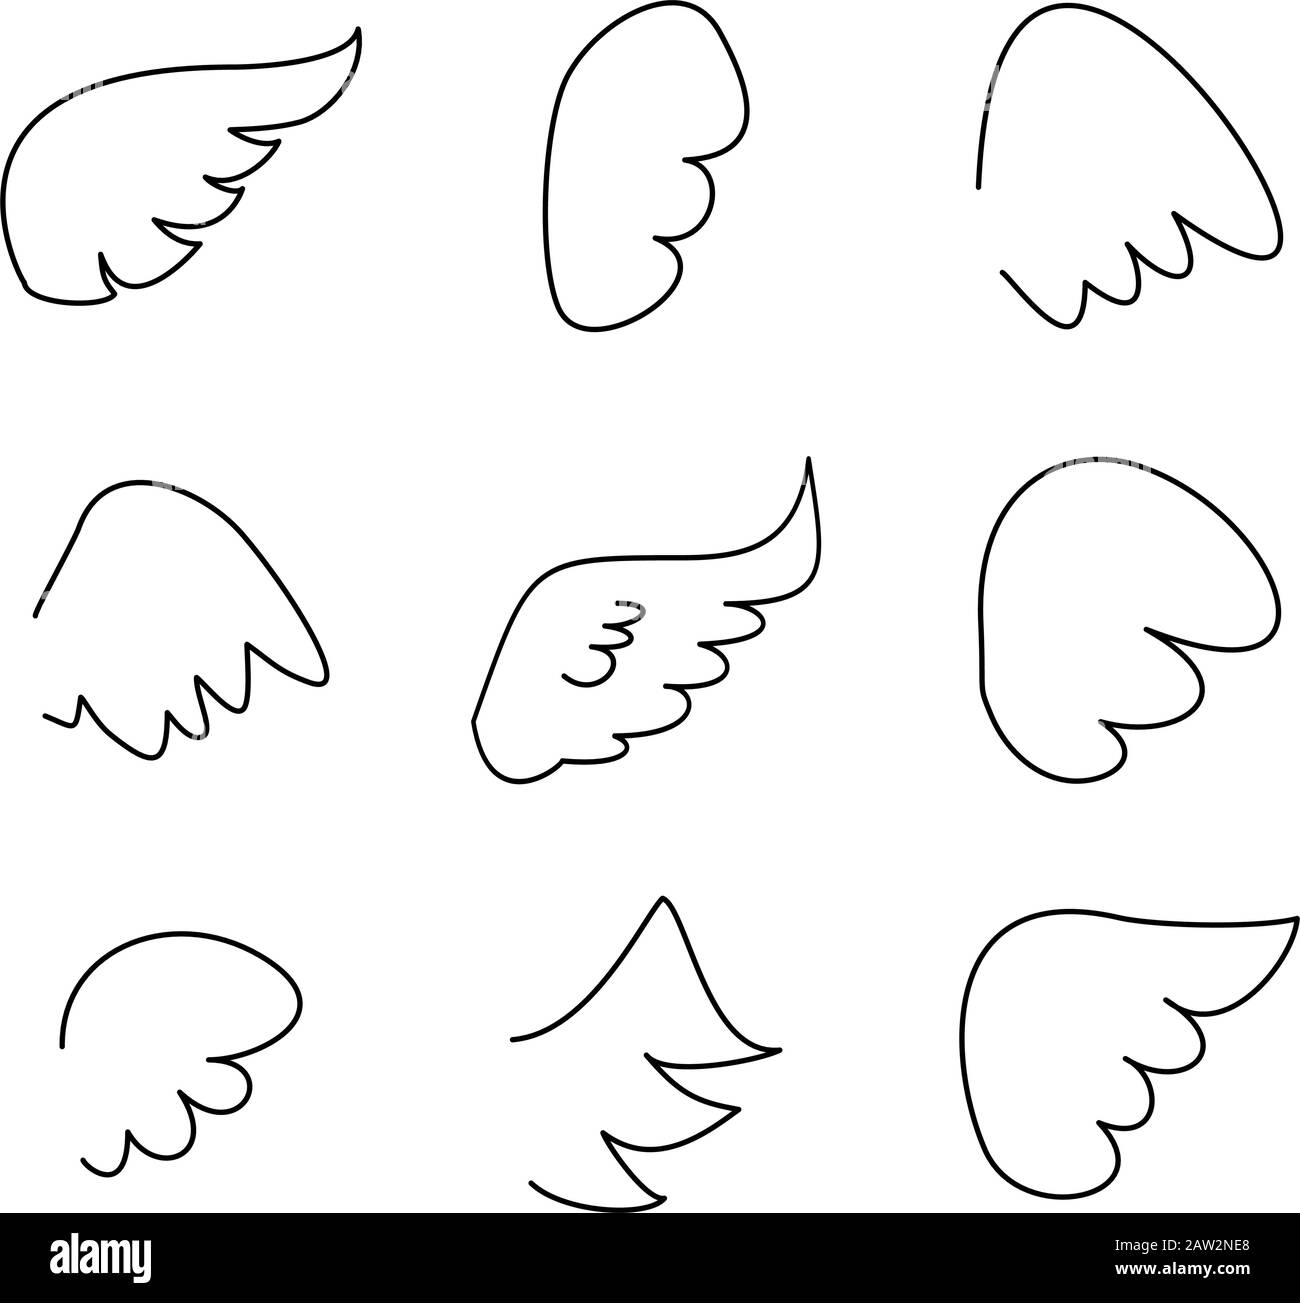 Collection Wings. Illustration vectorielle définie avec l'icône représentant une aile d'ange ou d'oiseau isolée sur fond blanc Illustration de Vecteur